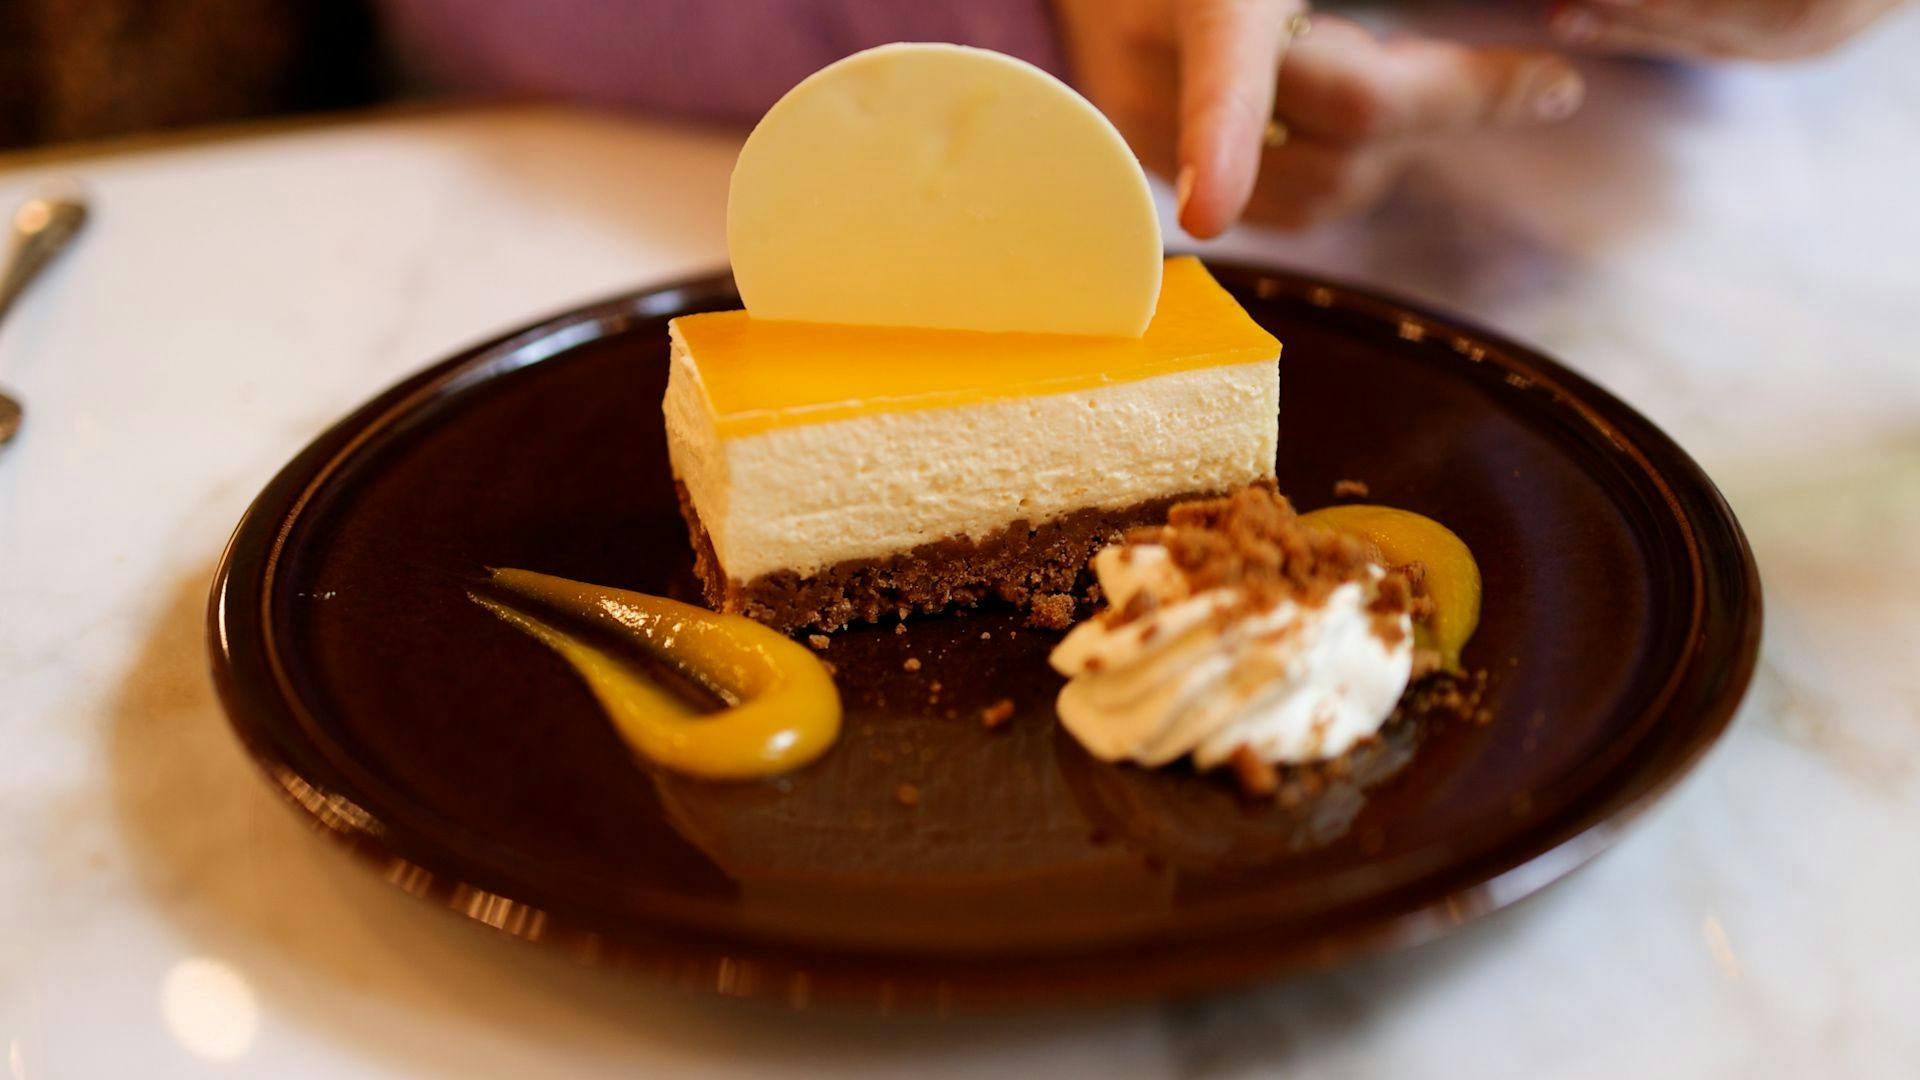 Le restaurant veille à proposer une sélection de plats vegans, comme ce cheesecake. ©Roole